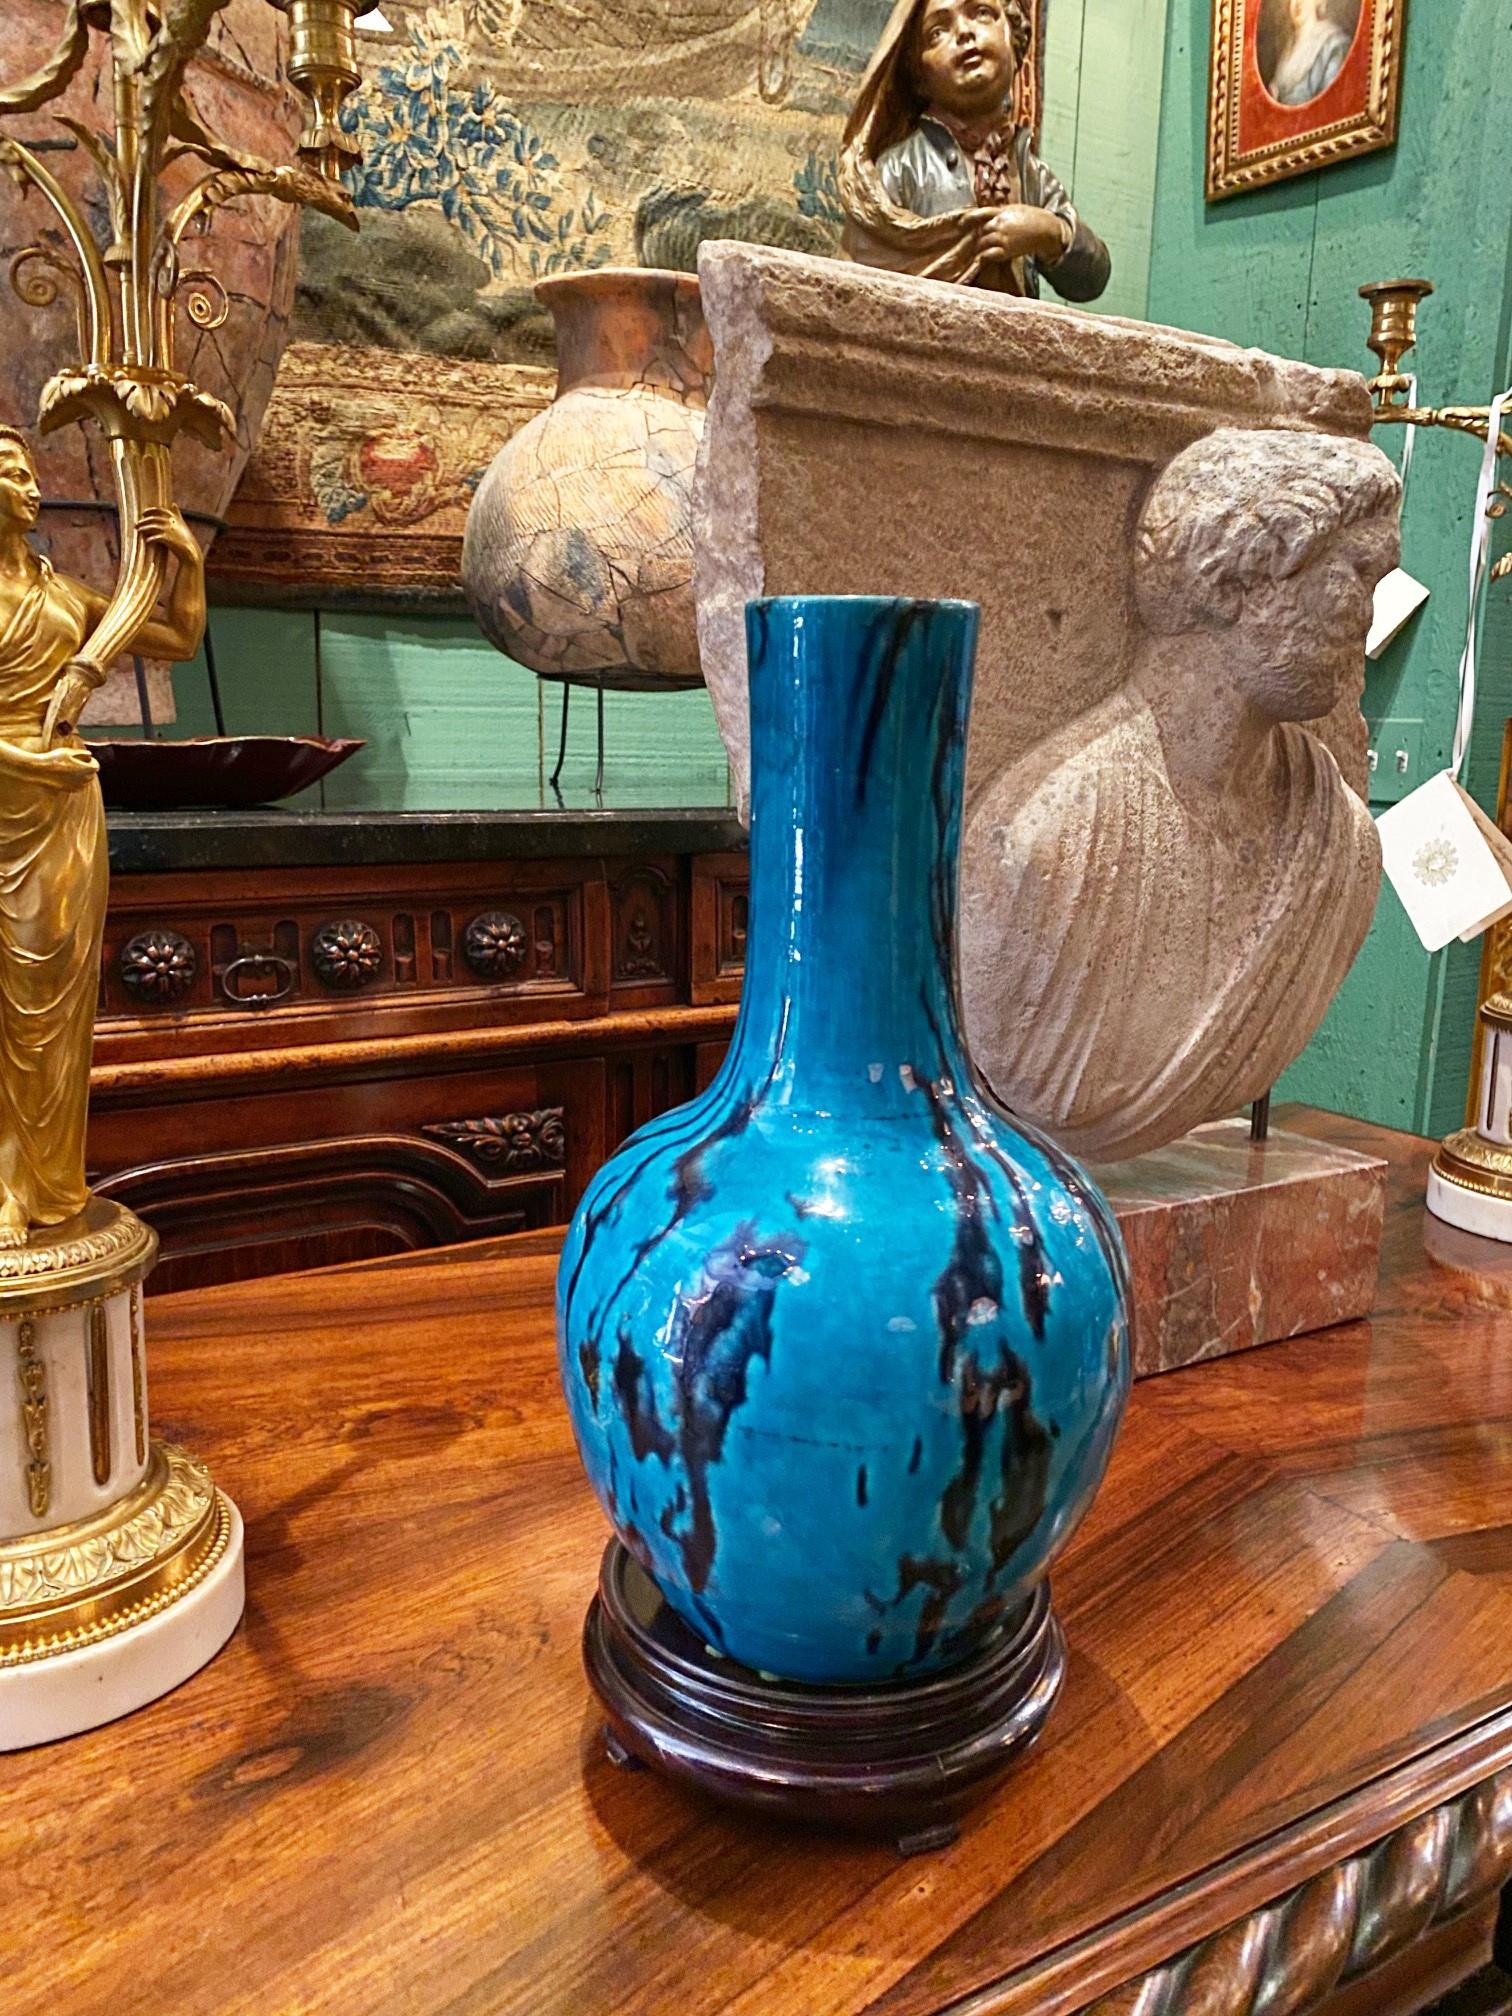 European 18th Century Turquoise Glazed Bottle Pottery Vase / Jar Decorative Object Design